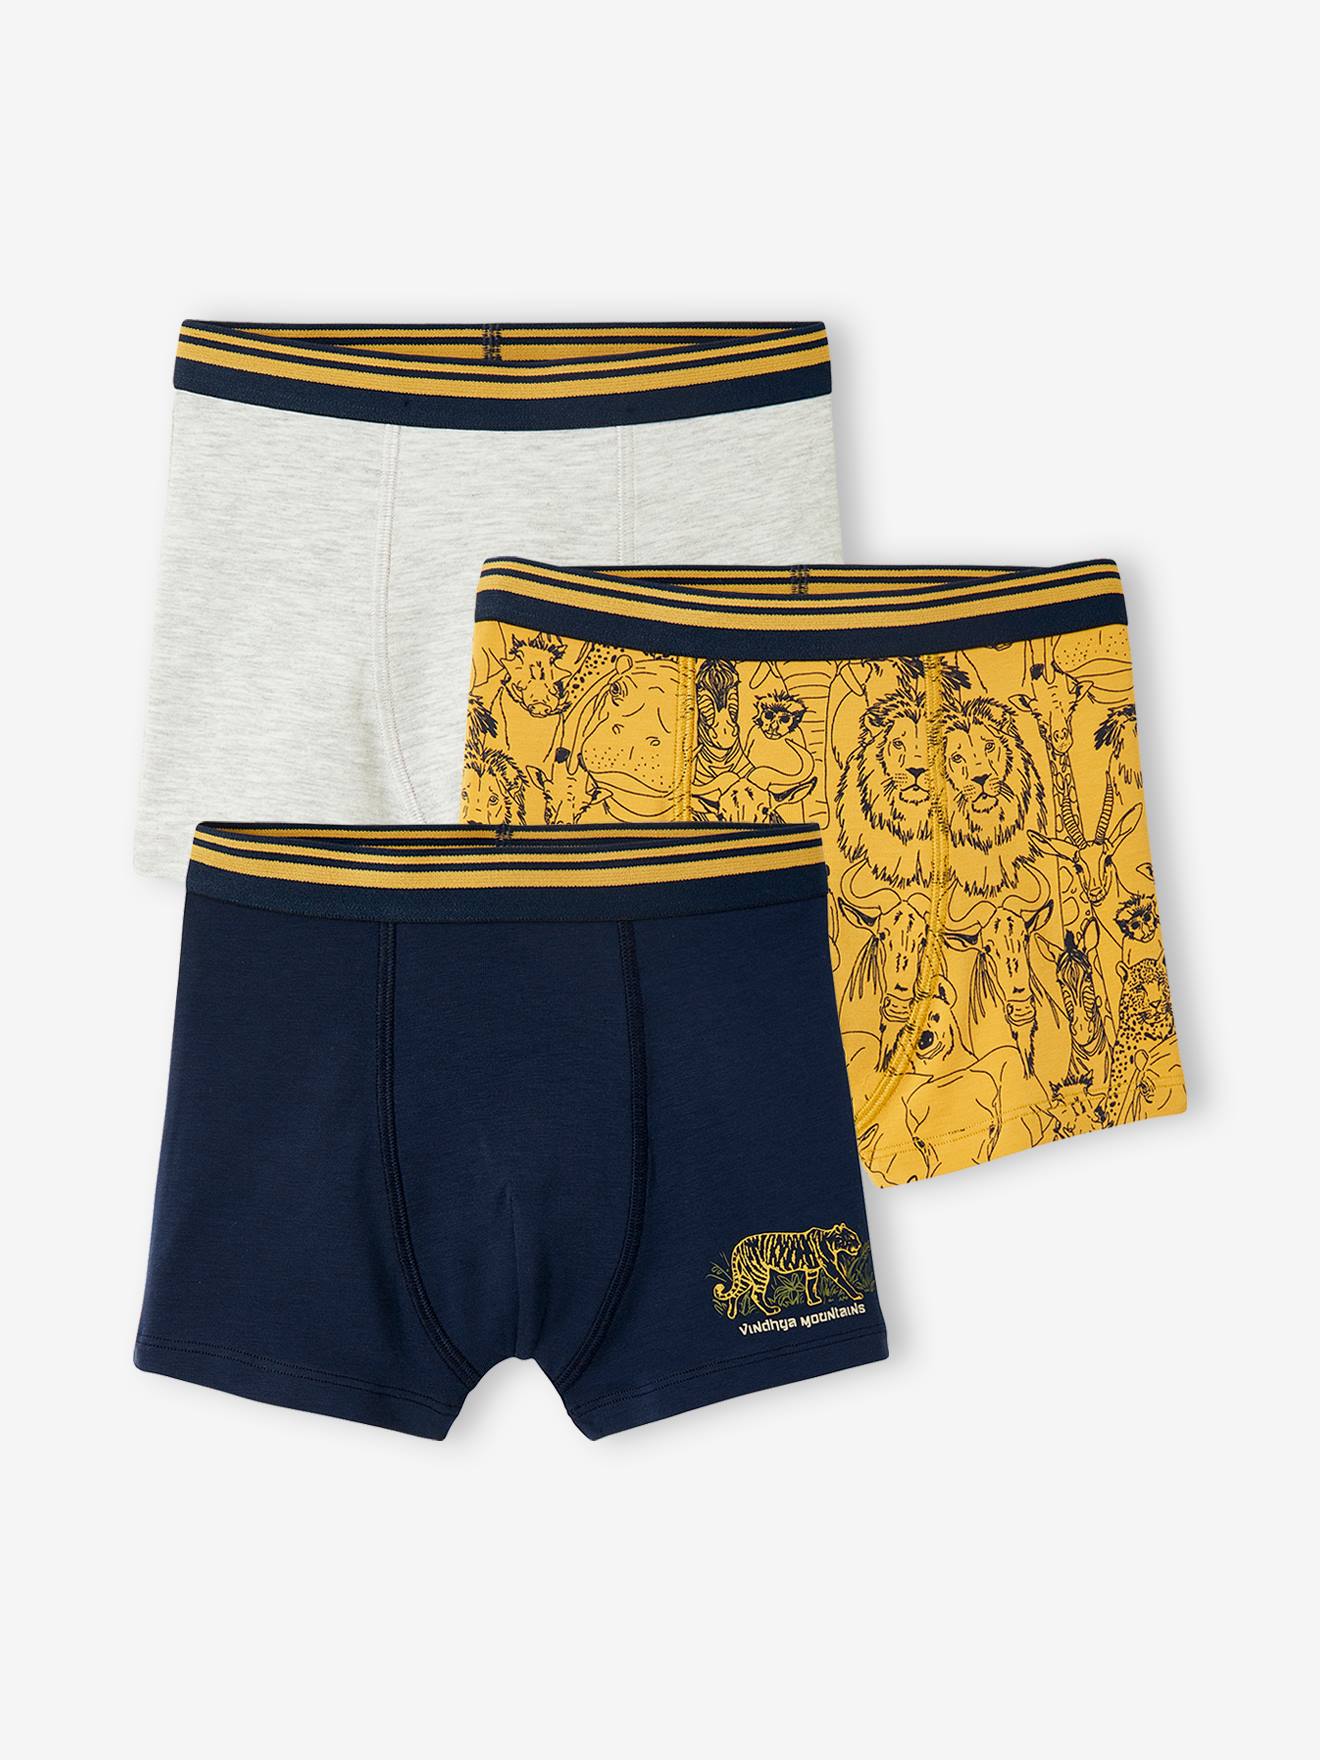 Set met 3 stretch boxers voor jongens "safari" set geel en donkerblauw